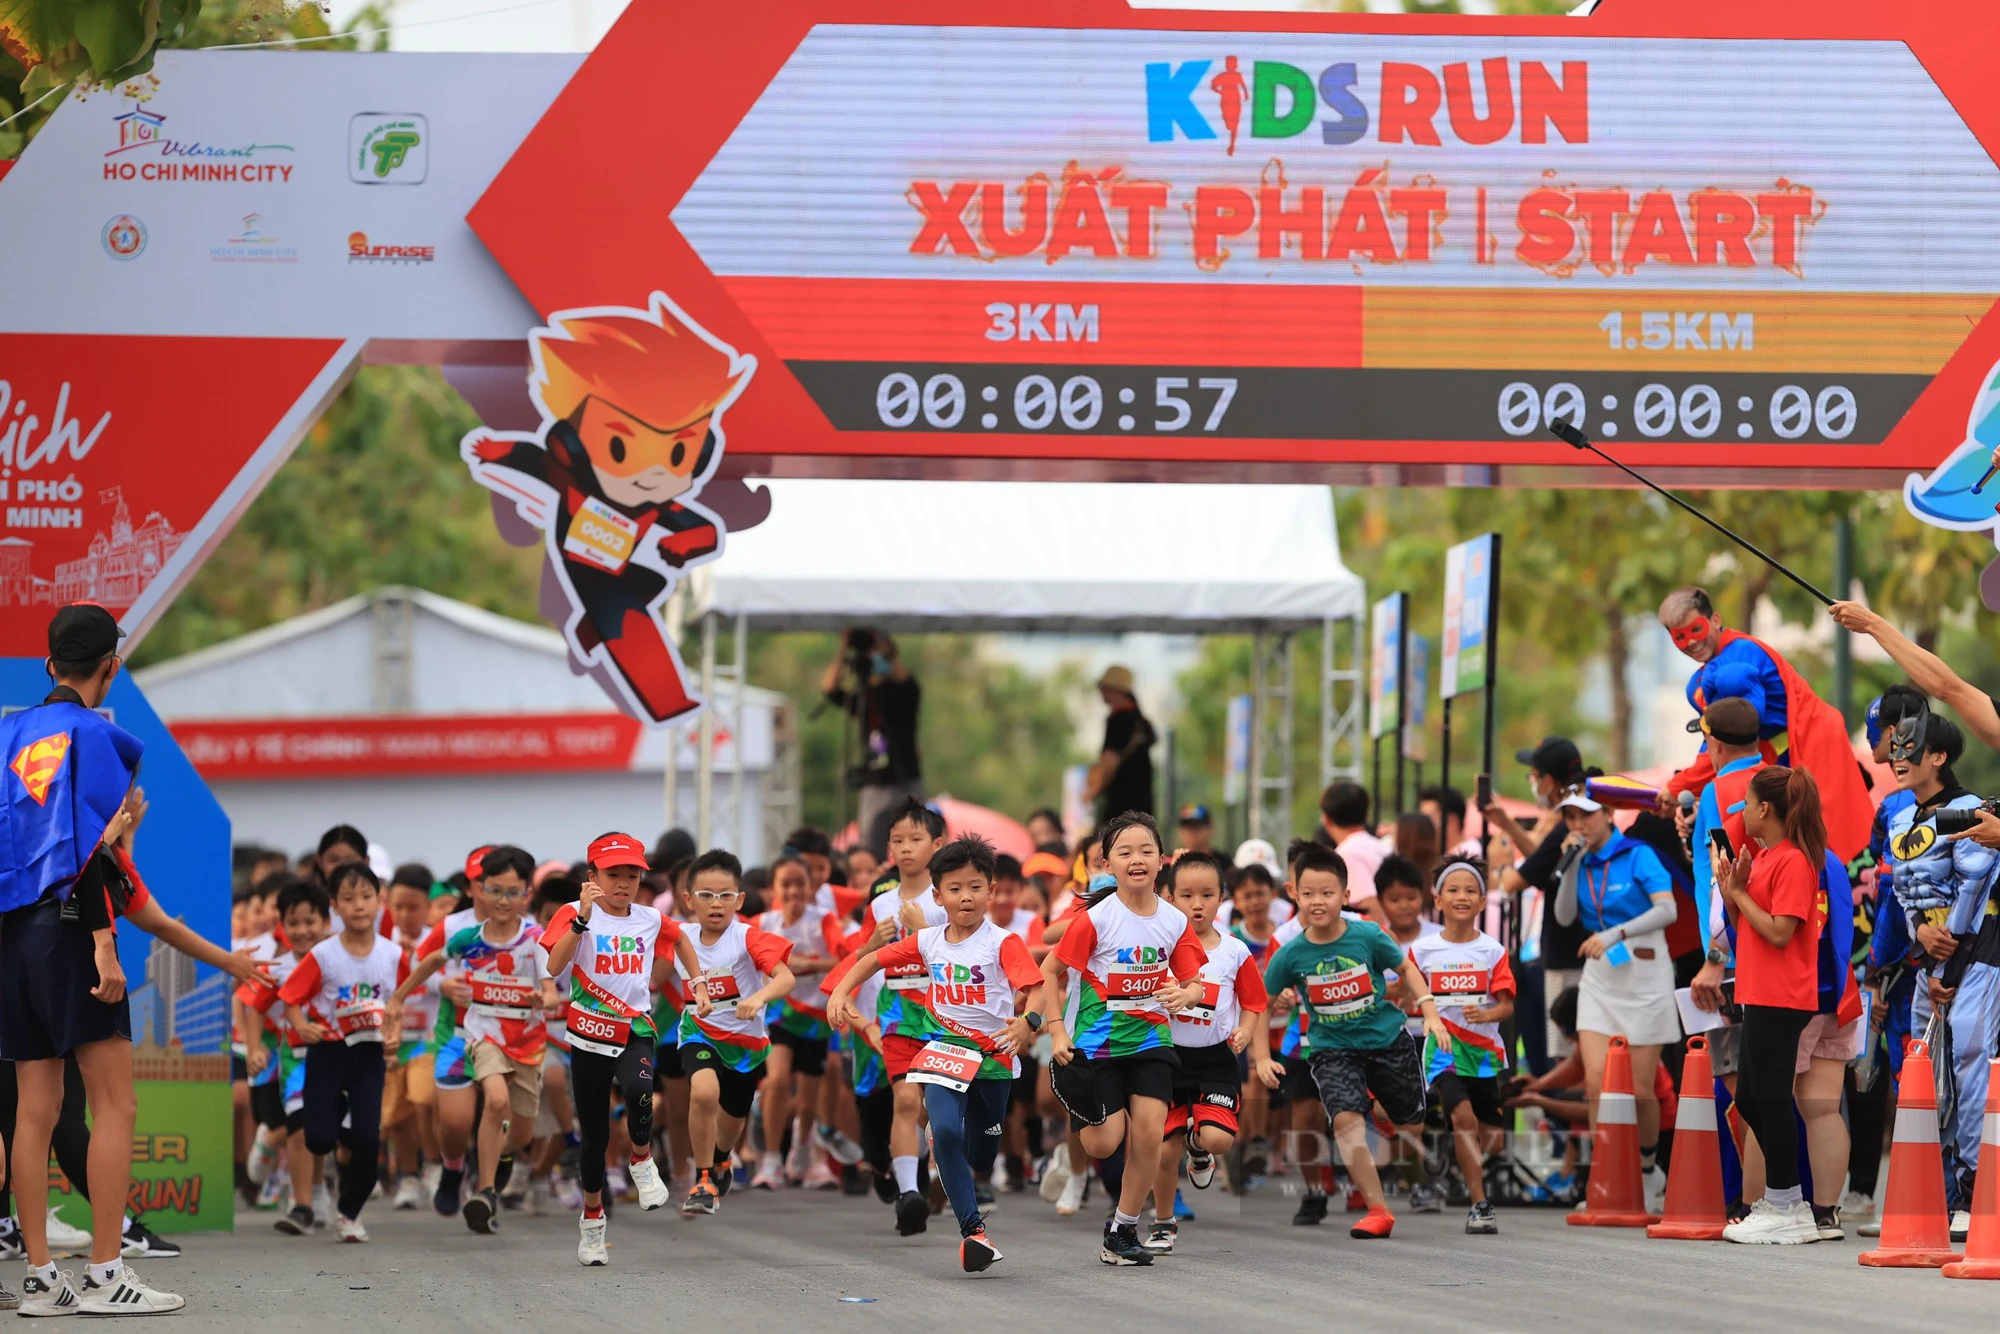 Hơn 1.000 vận động viên nhí tham gia giải chạy Kids Run - Ảnh 1.